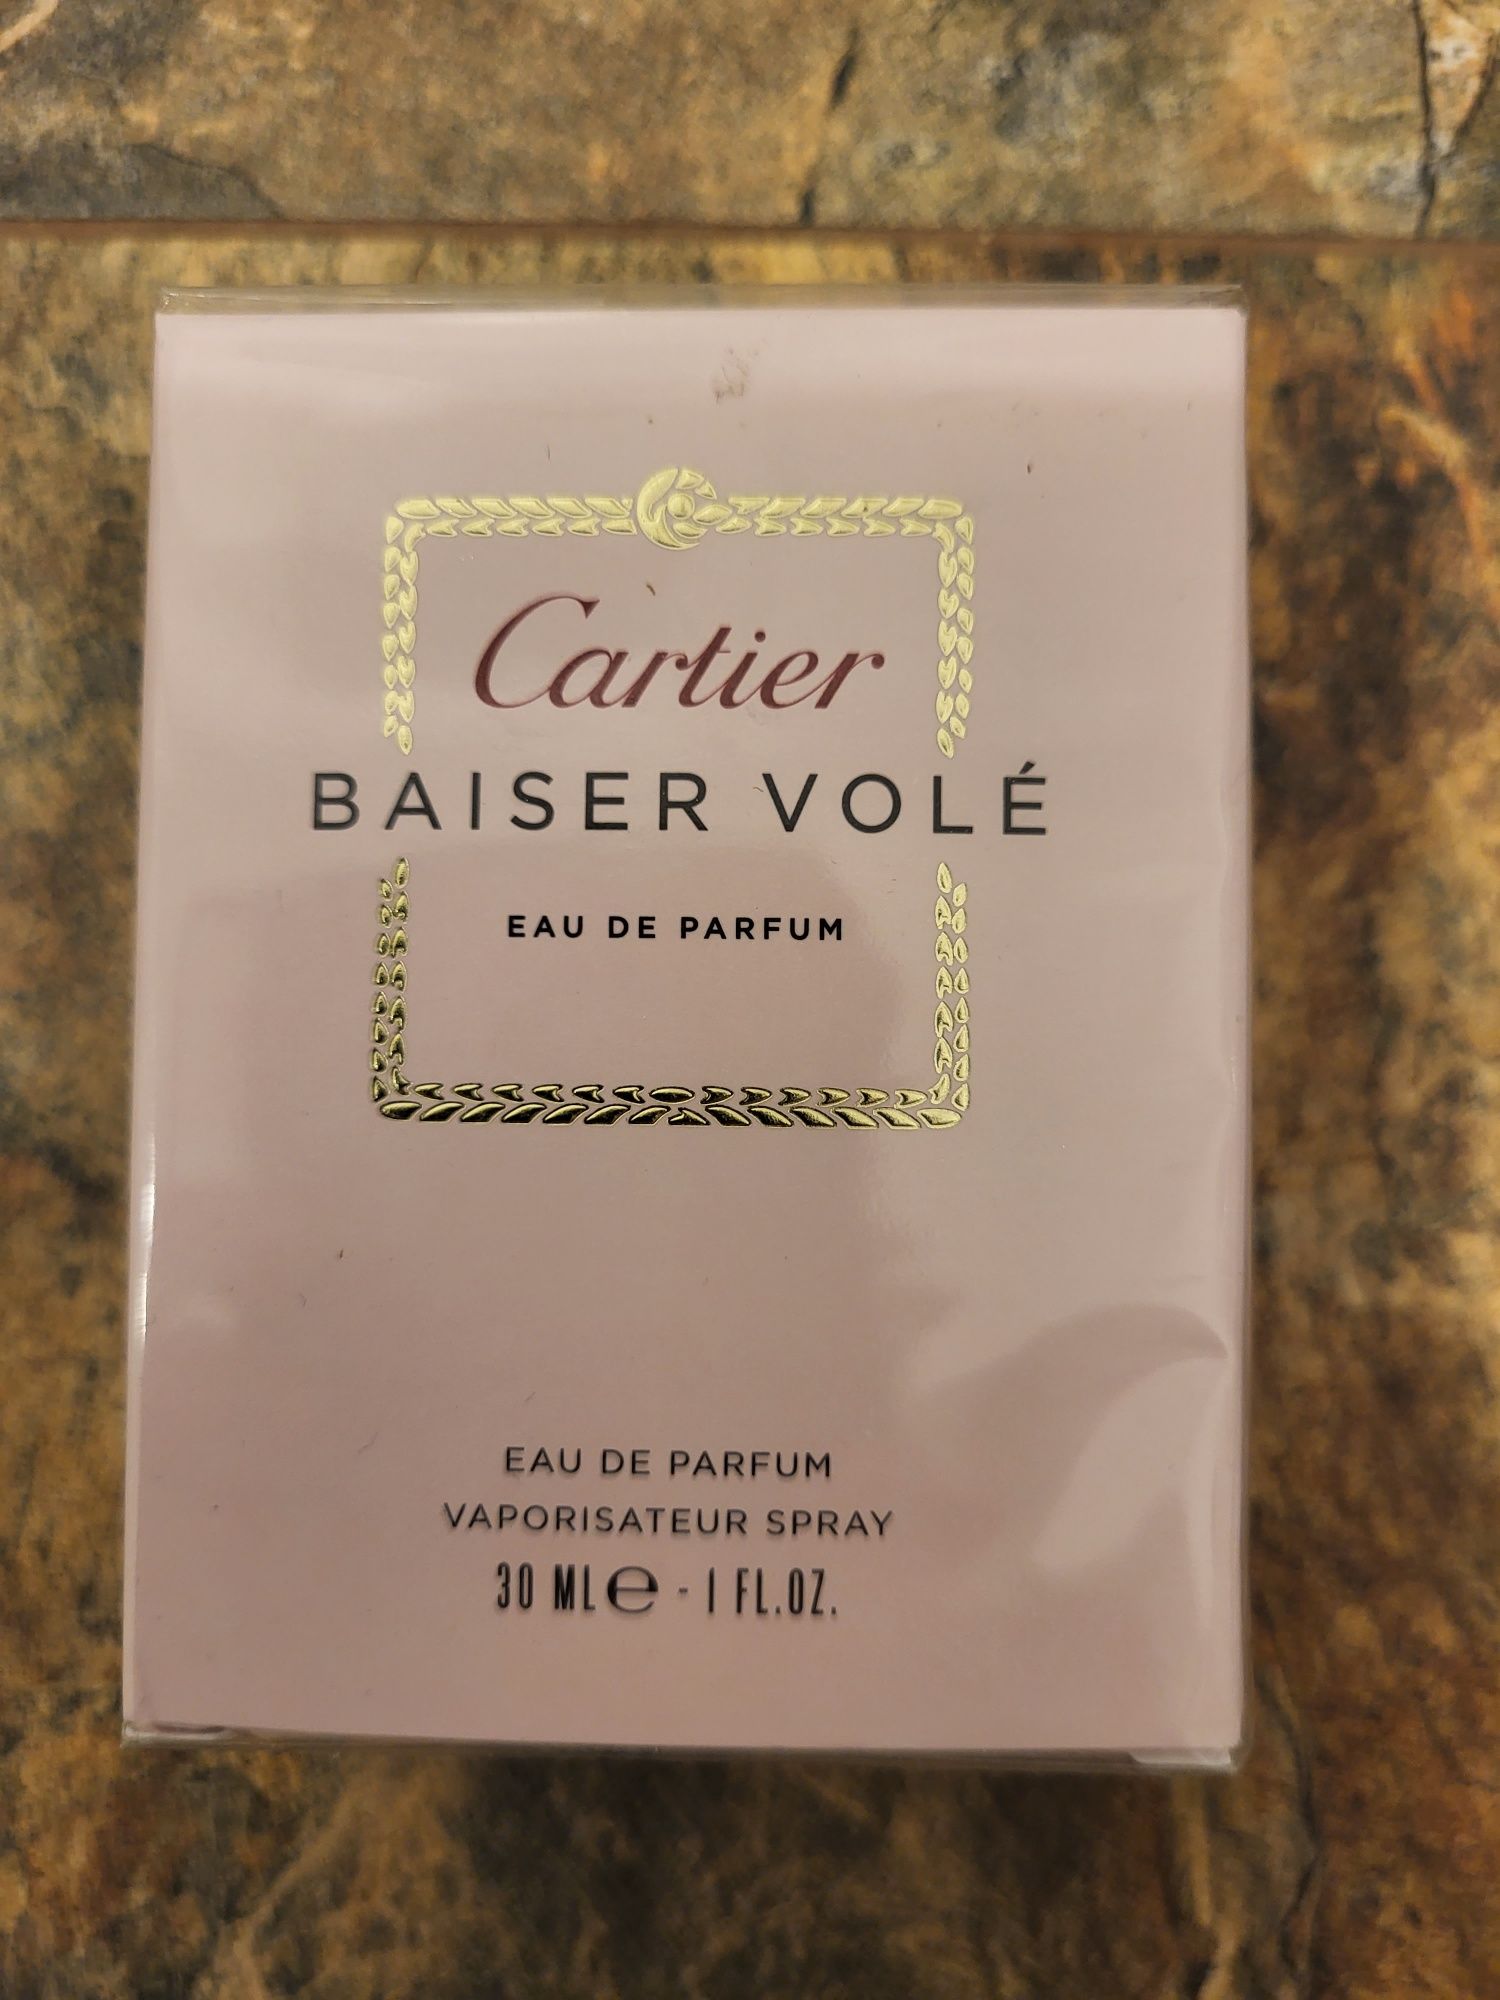 Cartier Baiser vole 30ml edp